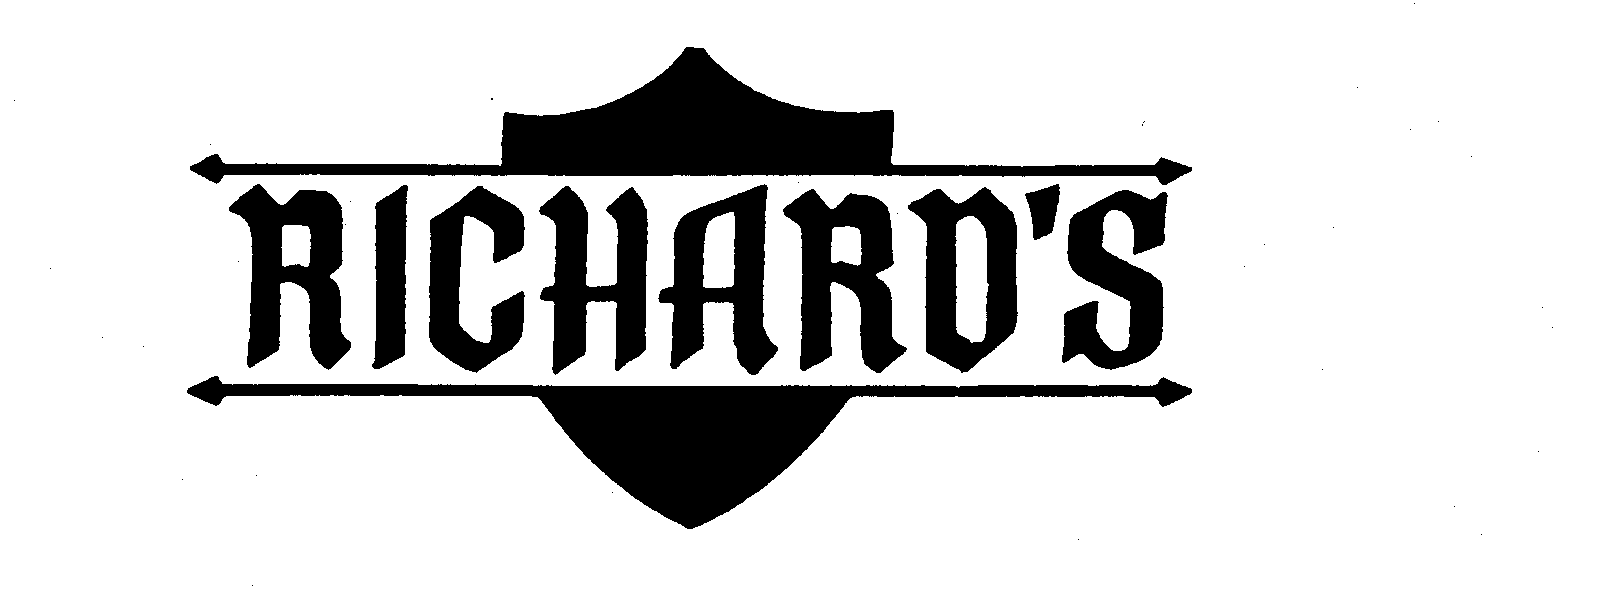  RICHARD'S